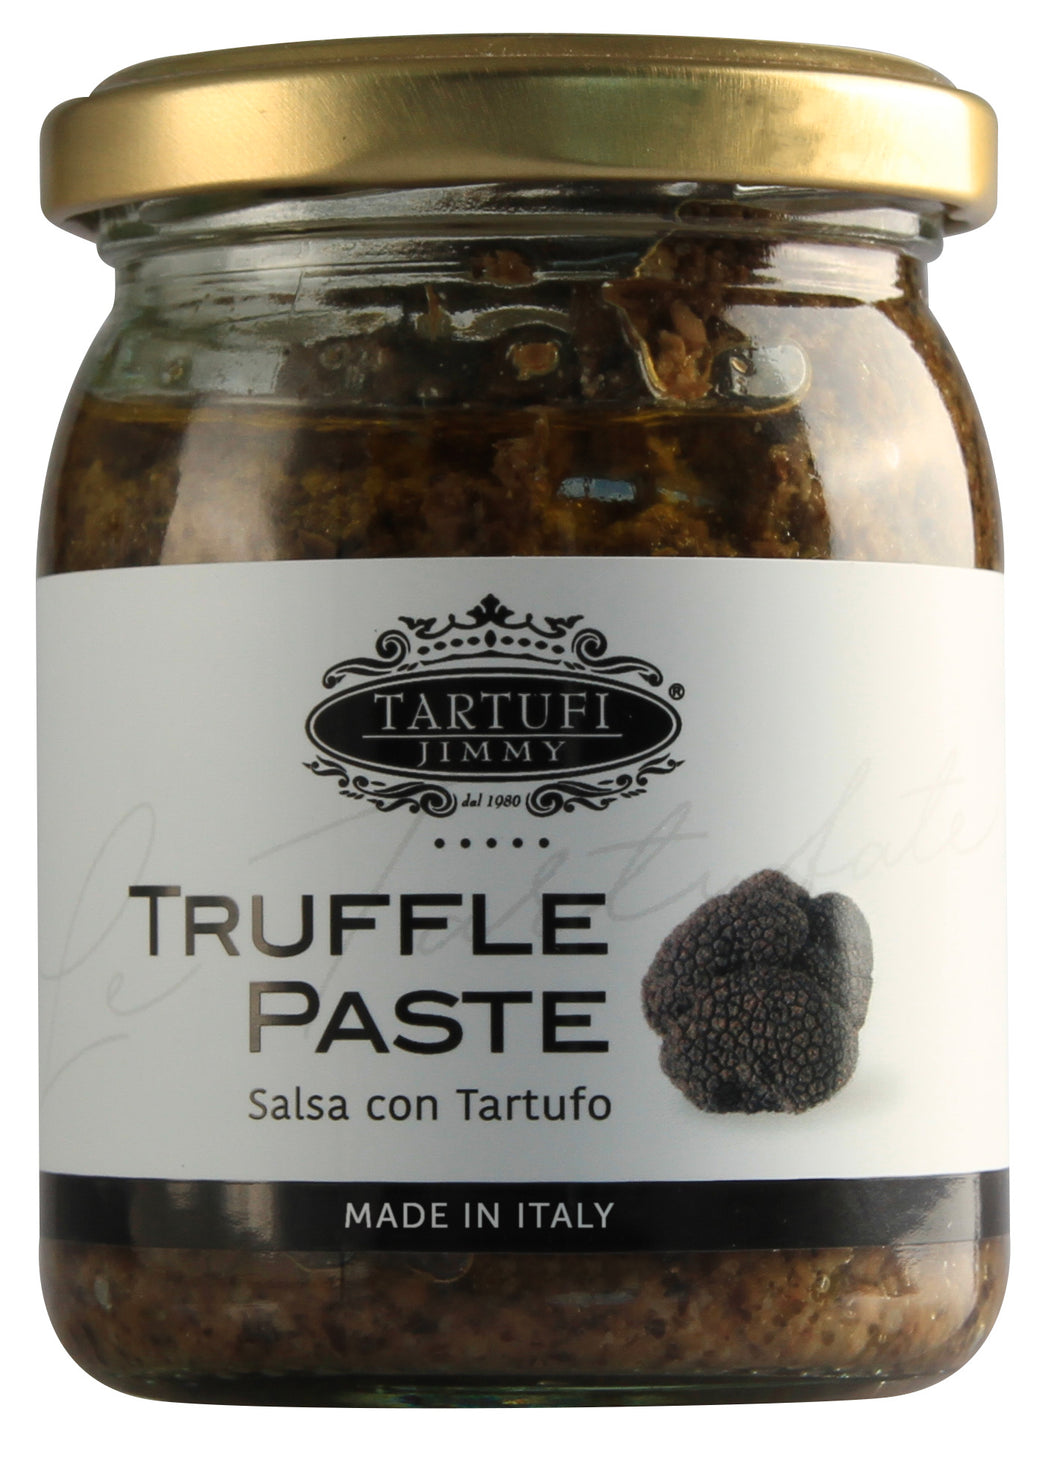 Tartufi Jimmy truffle Paste Salsa 180g